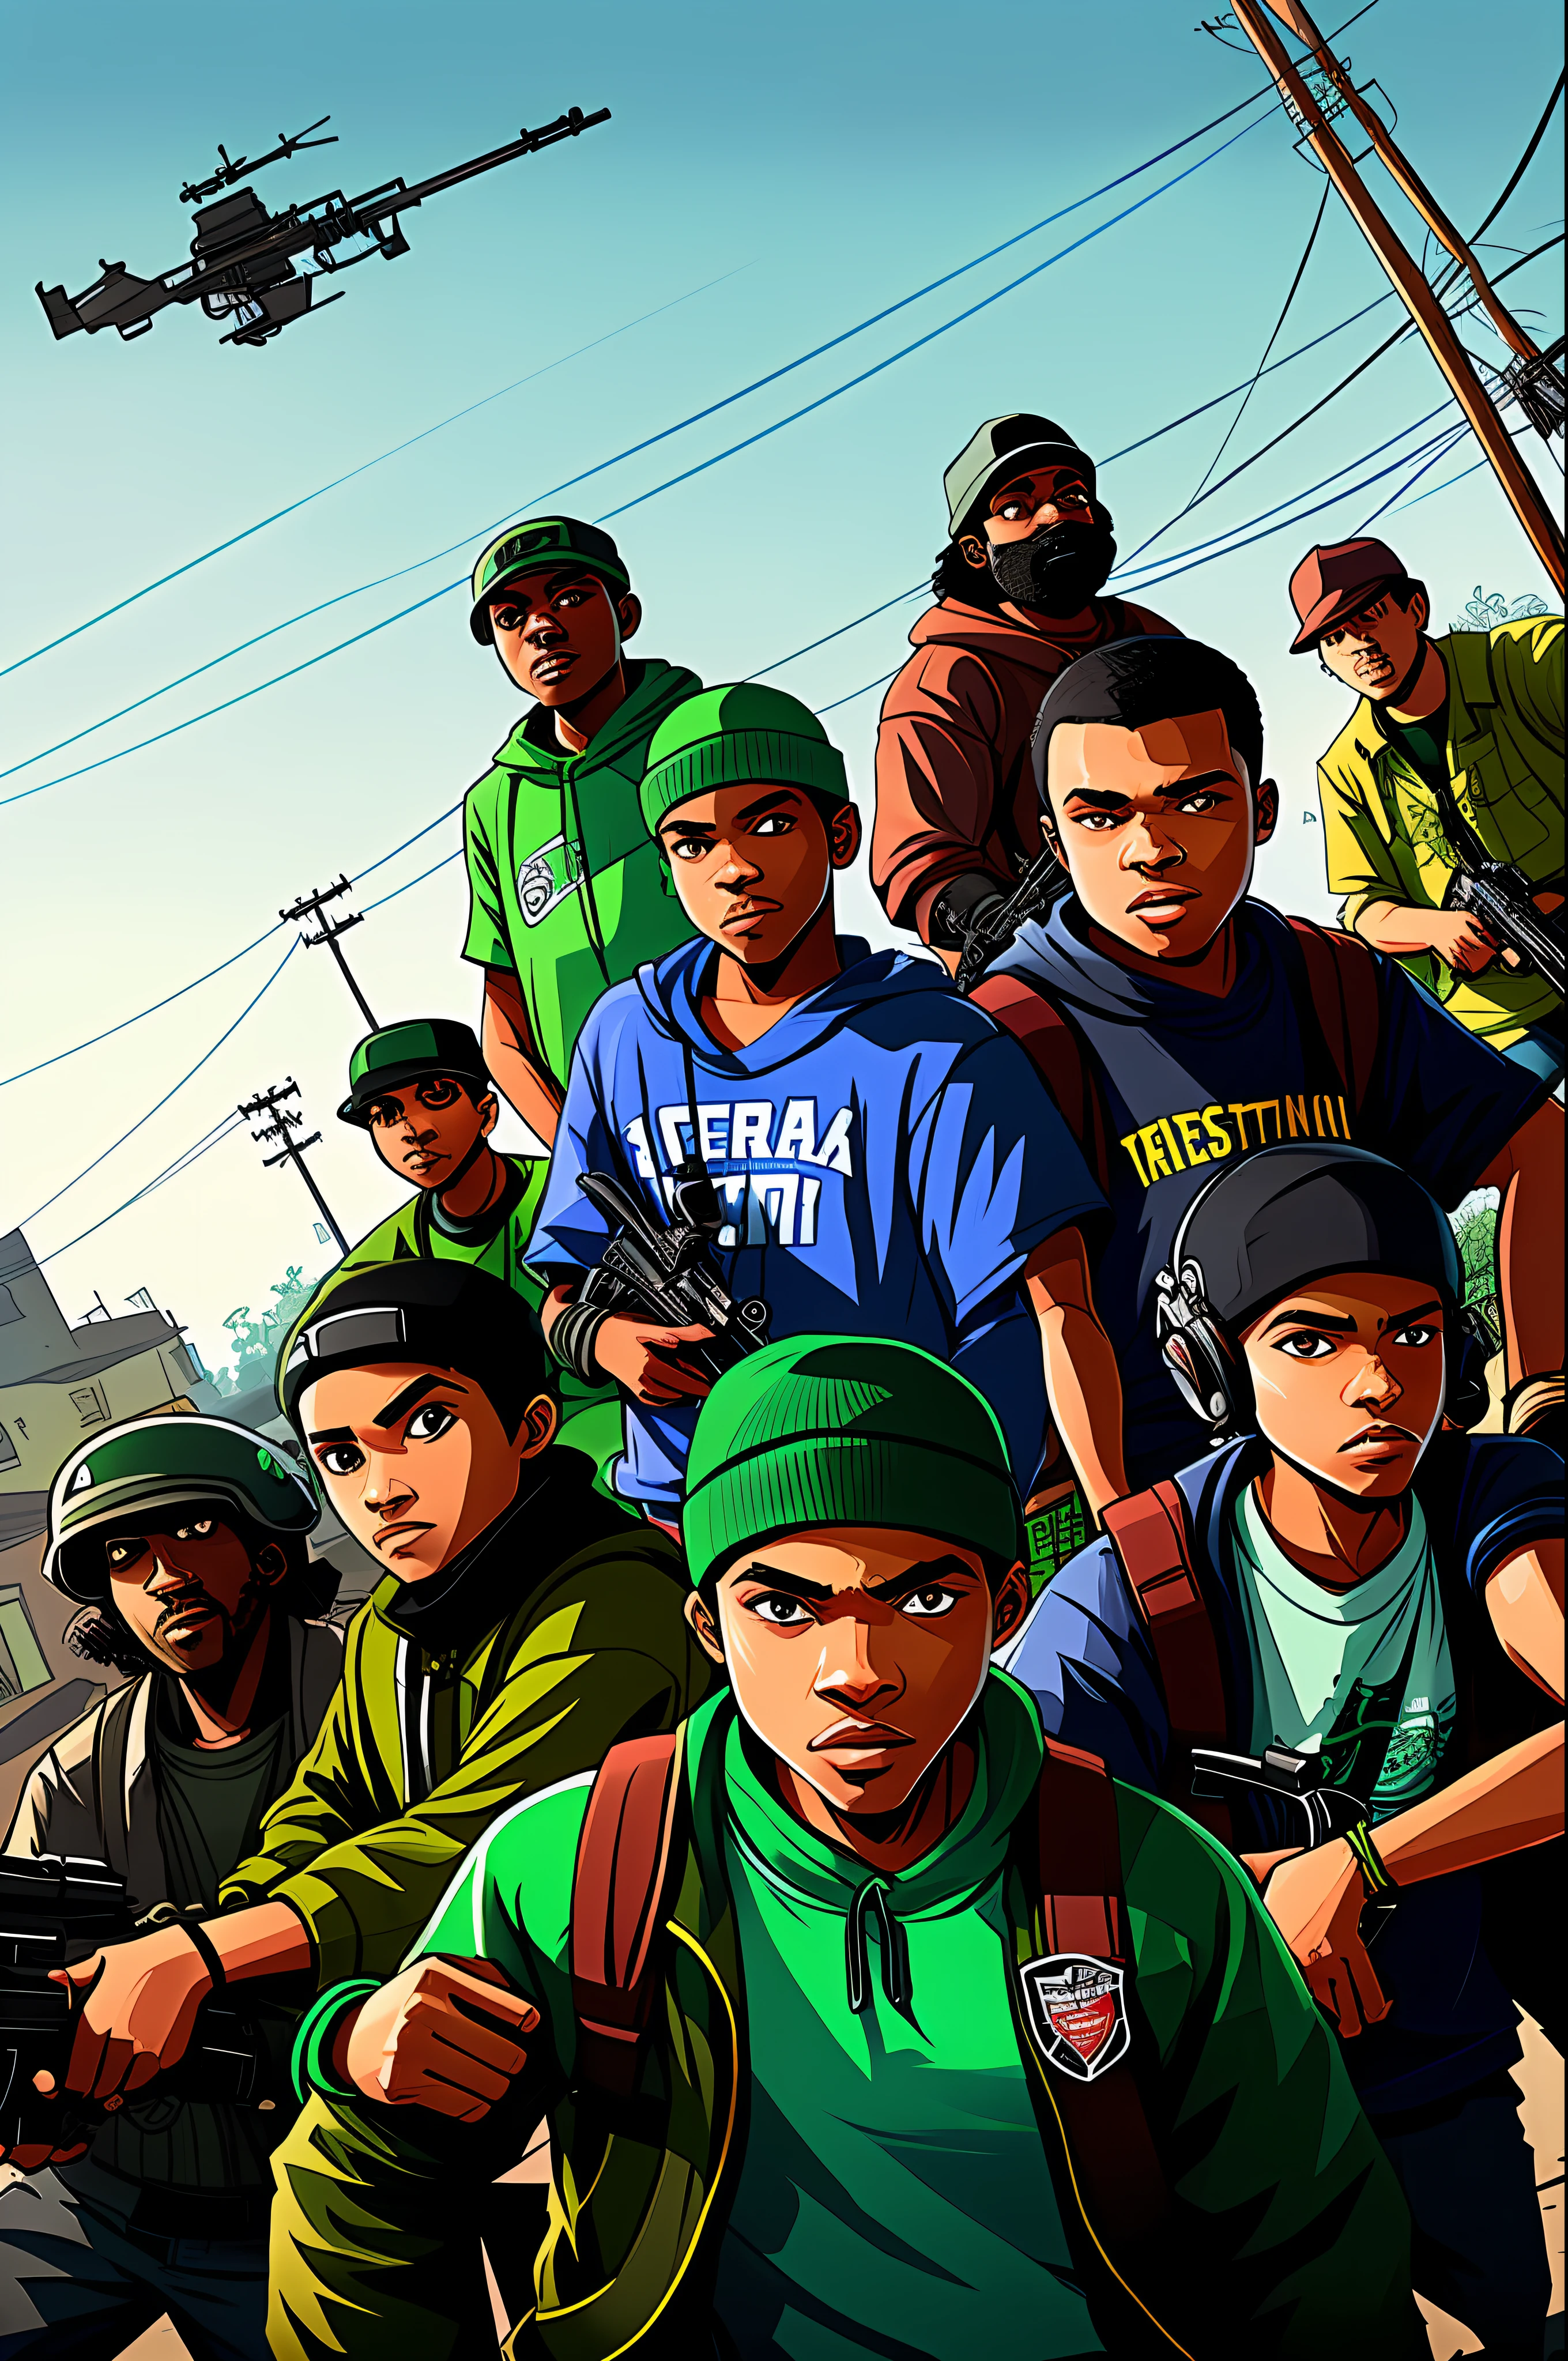 Создайте иллюстрацию, на которой изображен член Grove Street Families., банда главных героев игры, в перестрелке с членами конкурирующей банды, в темном и мрачном переулке.